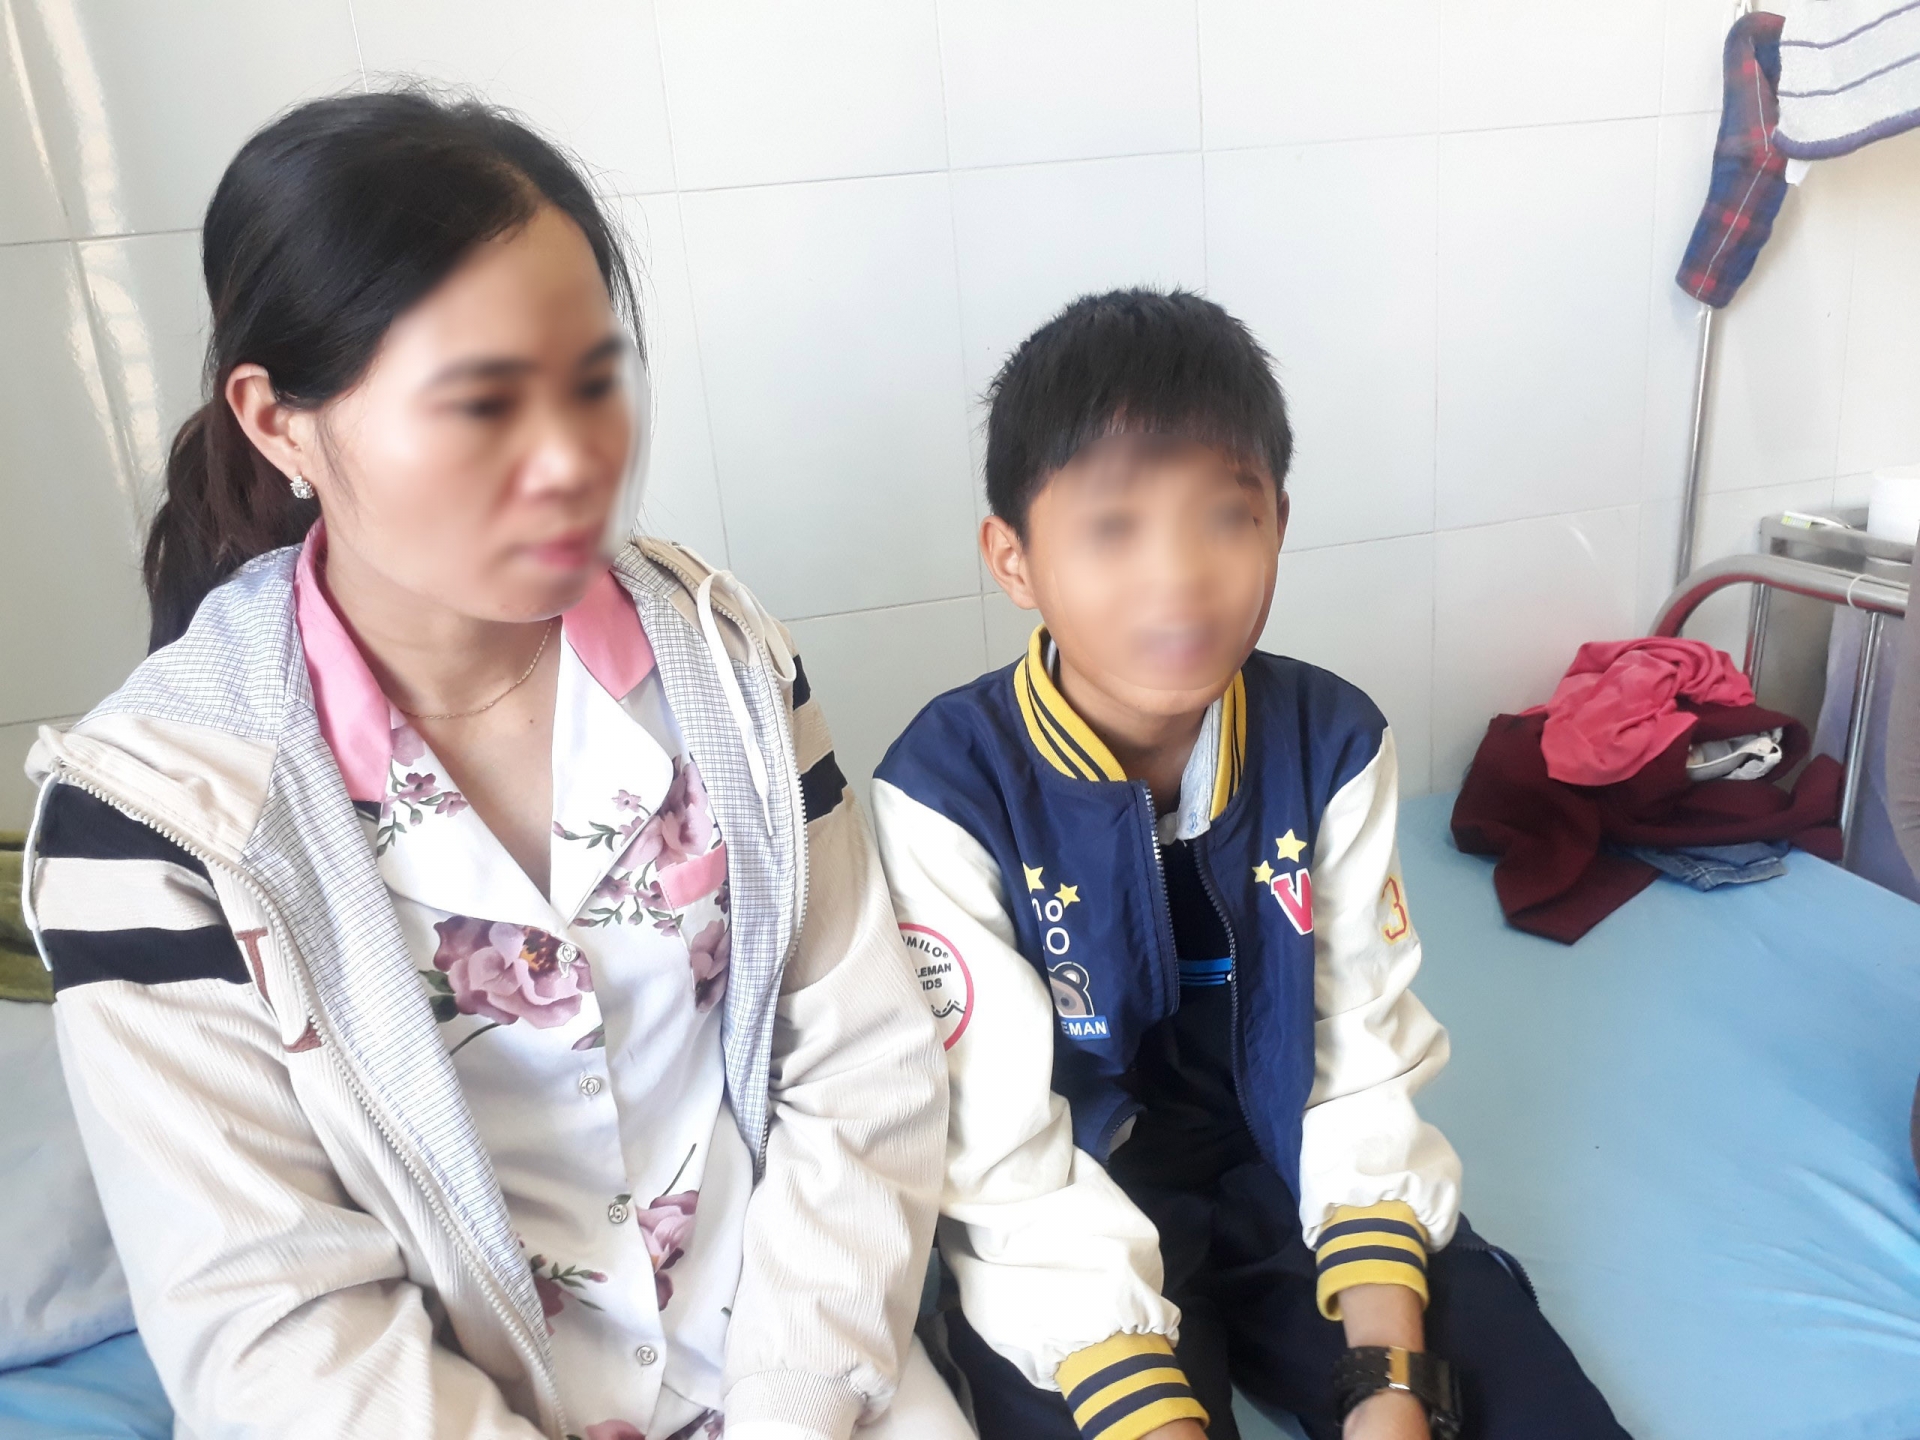 Hiện tới sáng 3/1, sức khoẻ em H. đã cơ bản ổn định sau hơn 3 ngày được điều trị tại Bệnh viện Đa khoa Lâm Đồng.